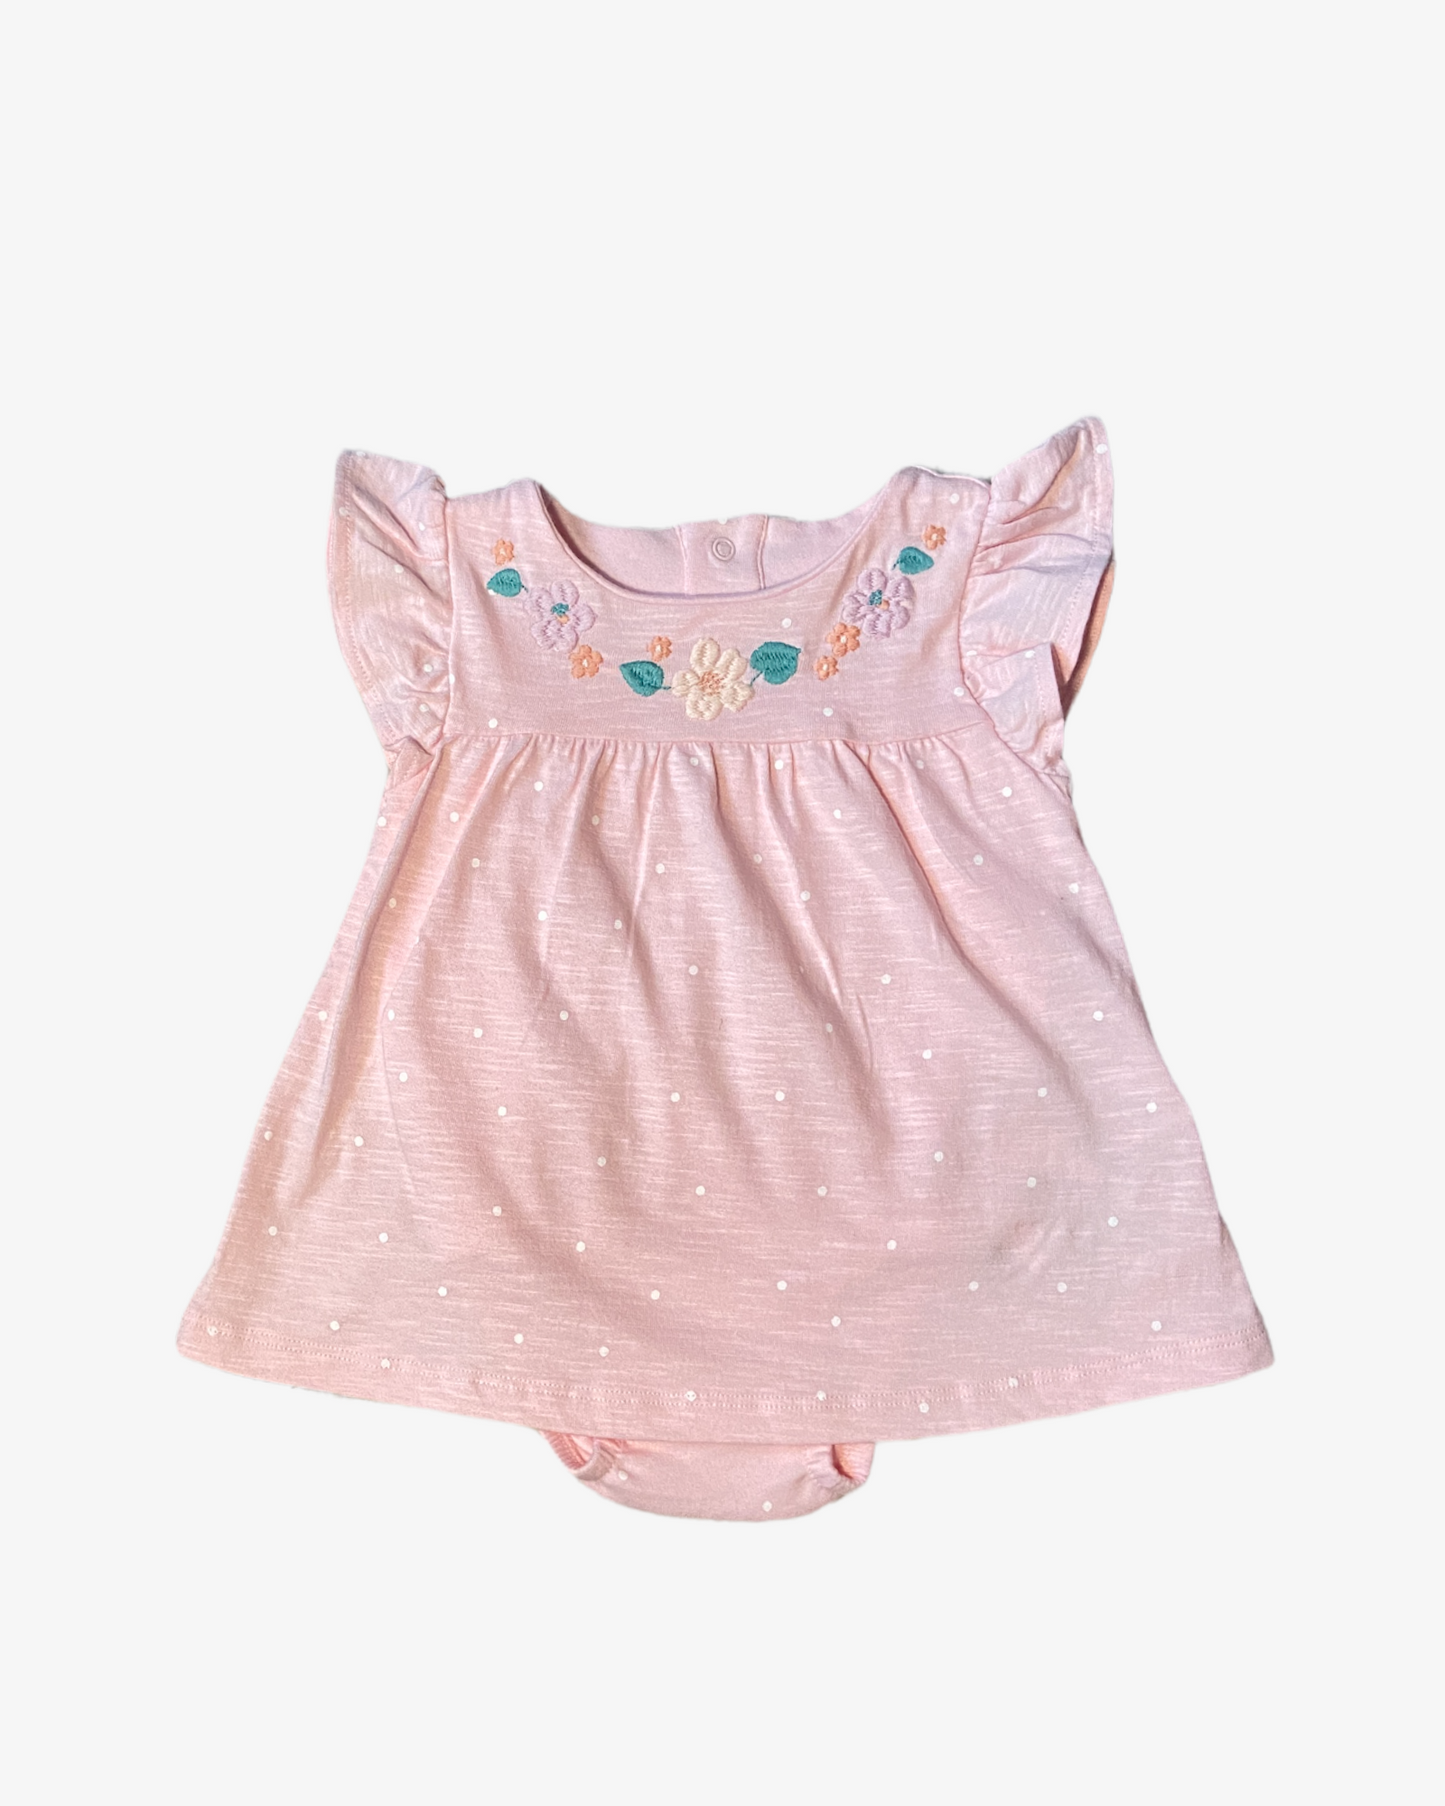 0-3 M Pink polka dot dress